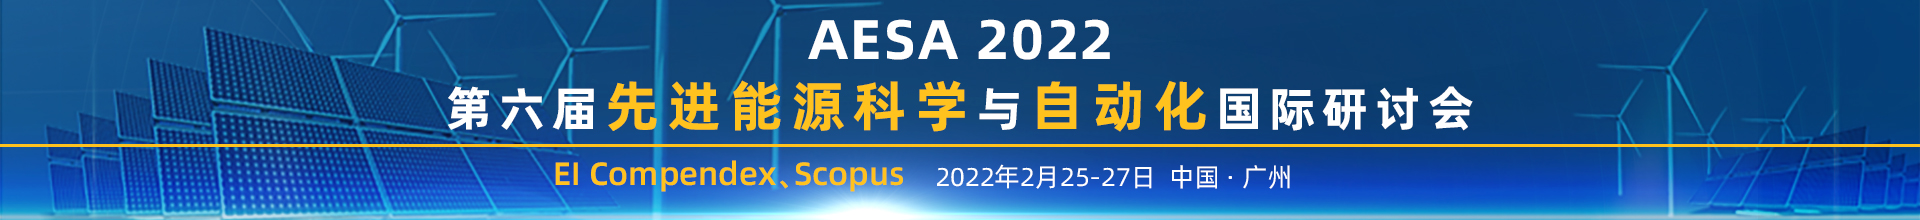 2月广州-AESA-2022-学术会议云PC端1920x220-陈军-20211117.jpg